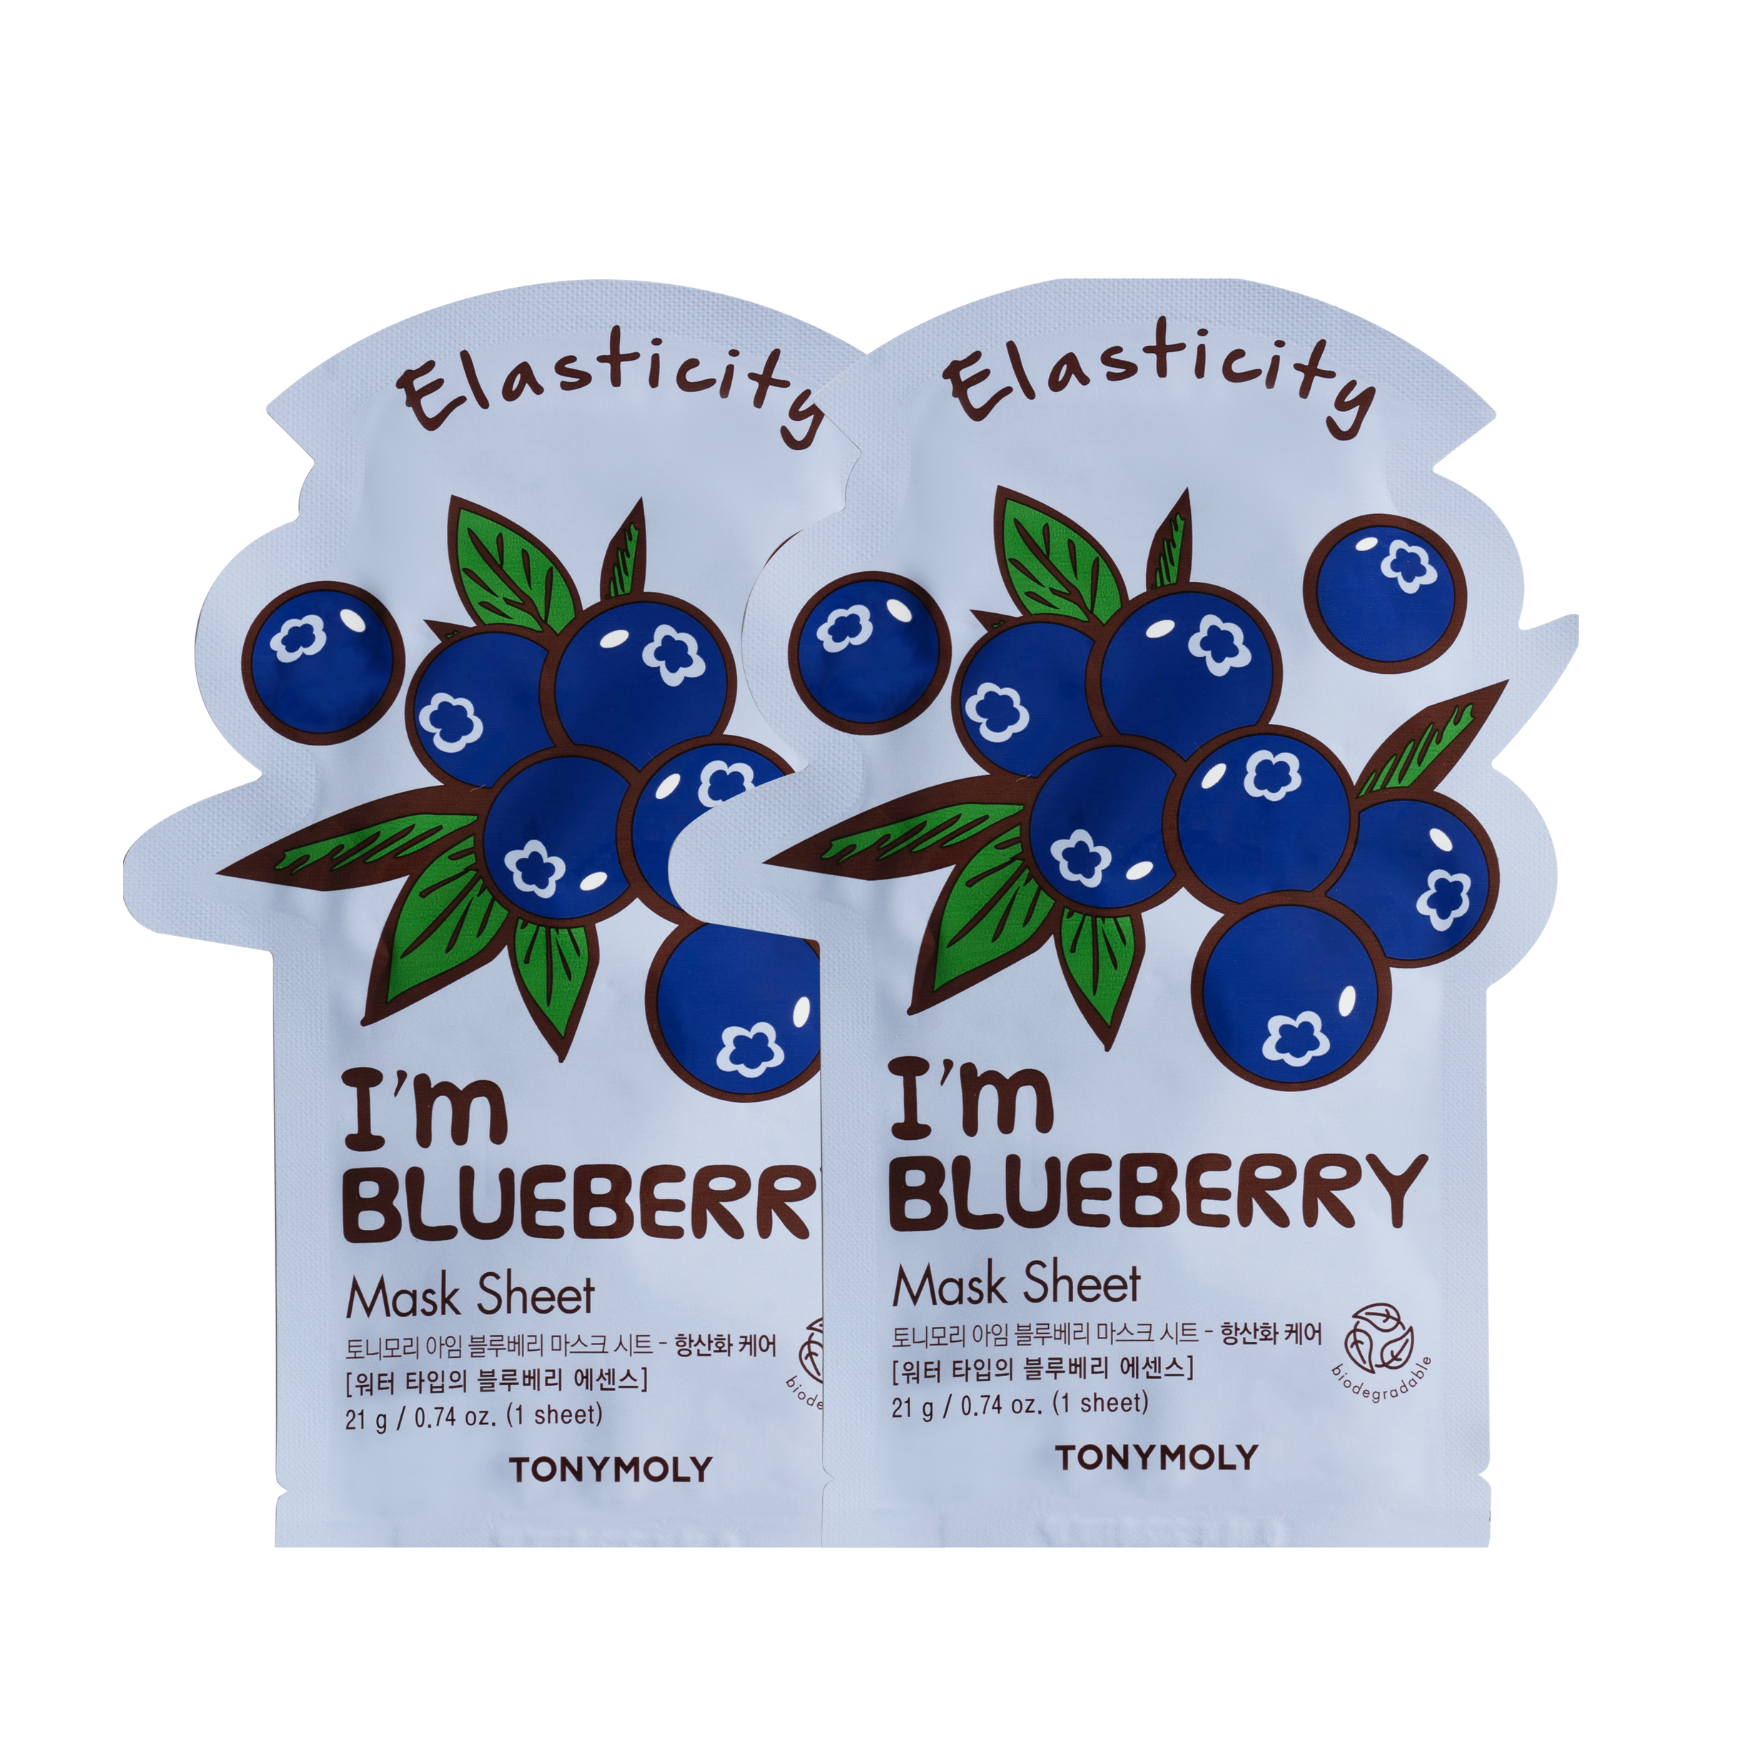 I'm Blueberry Mask